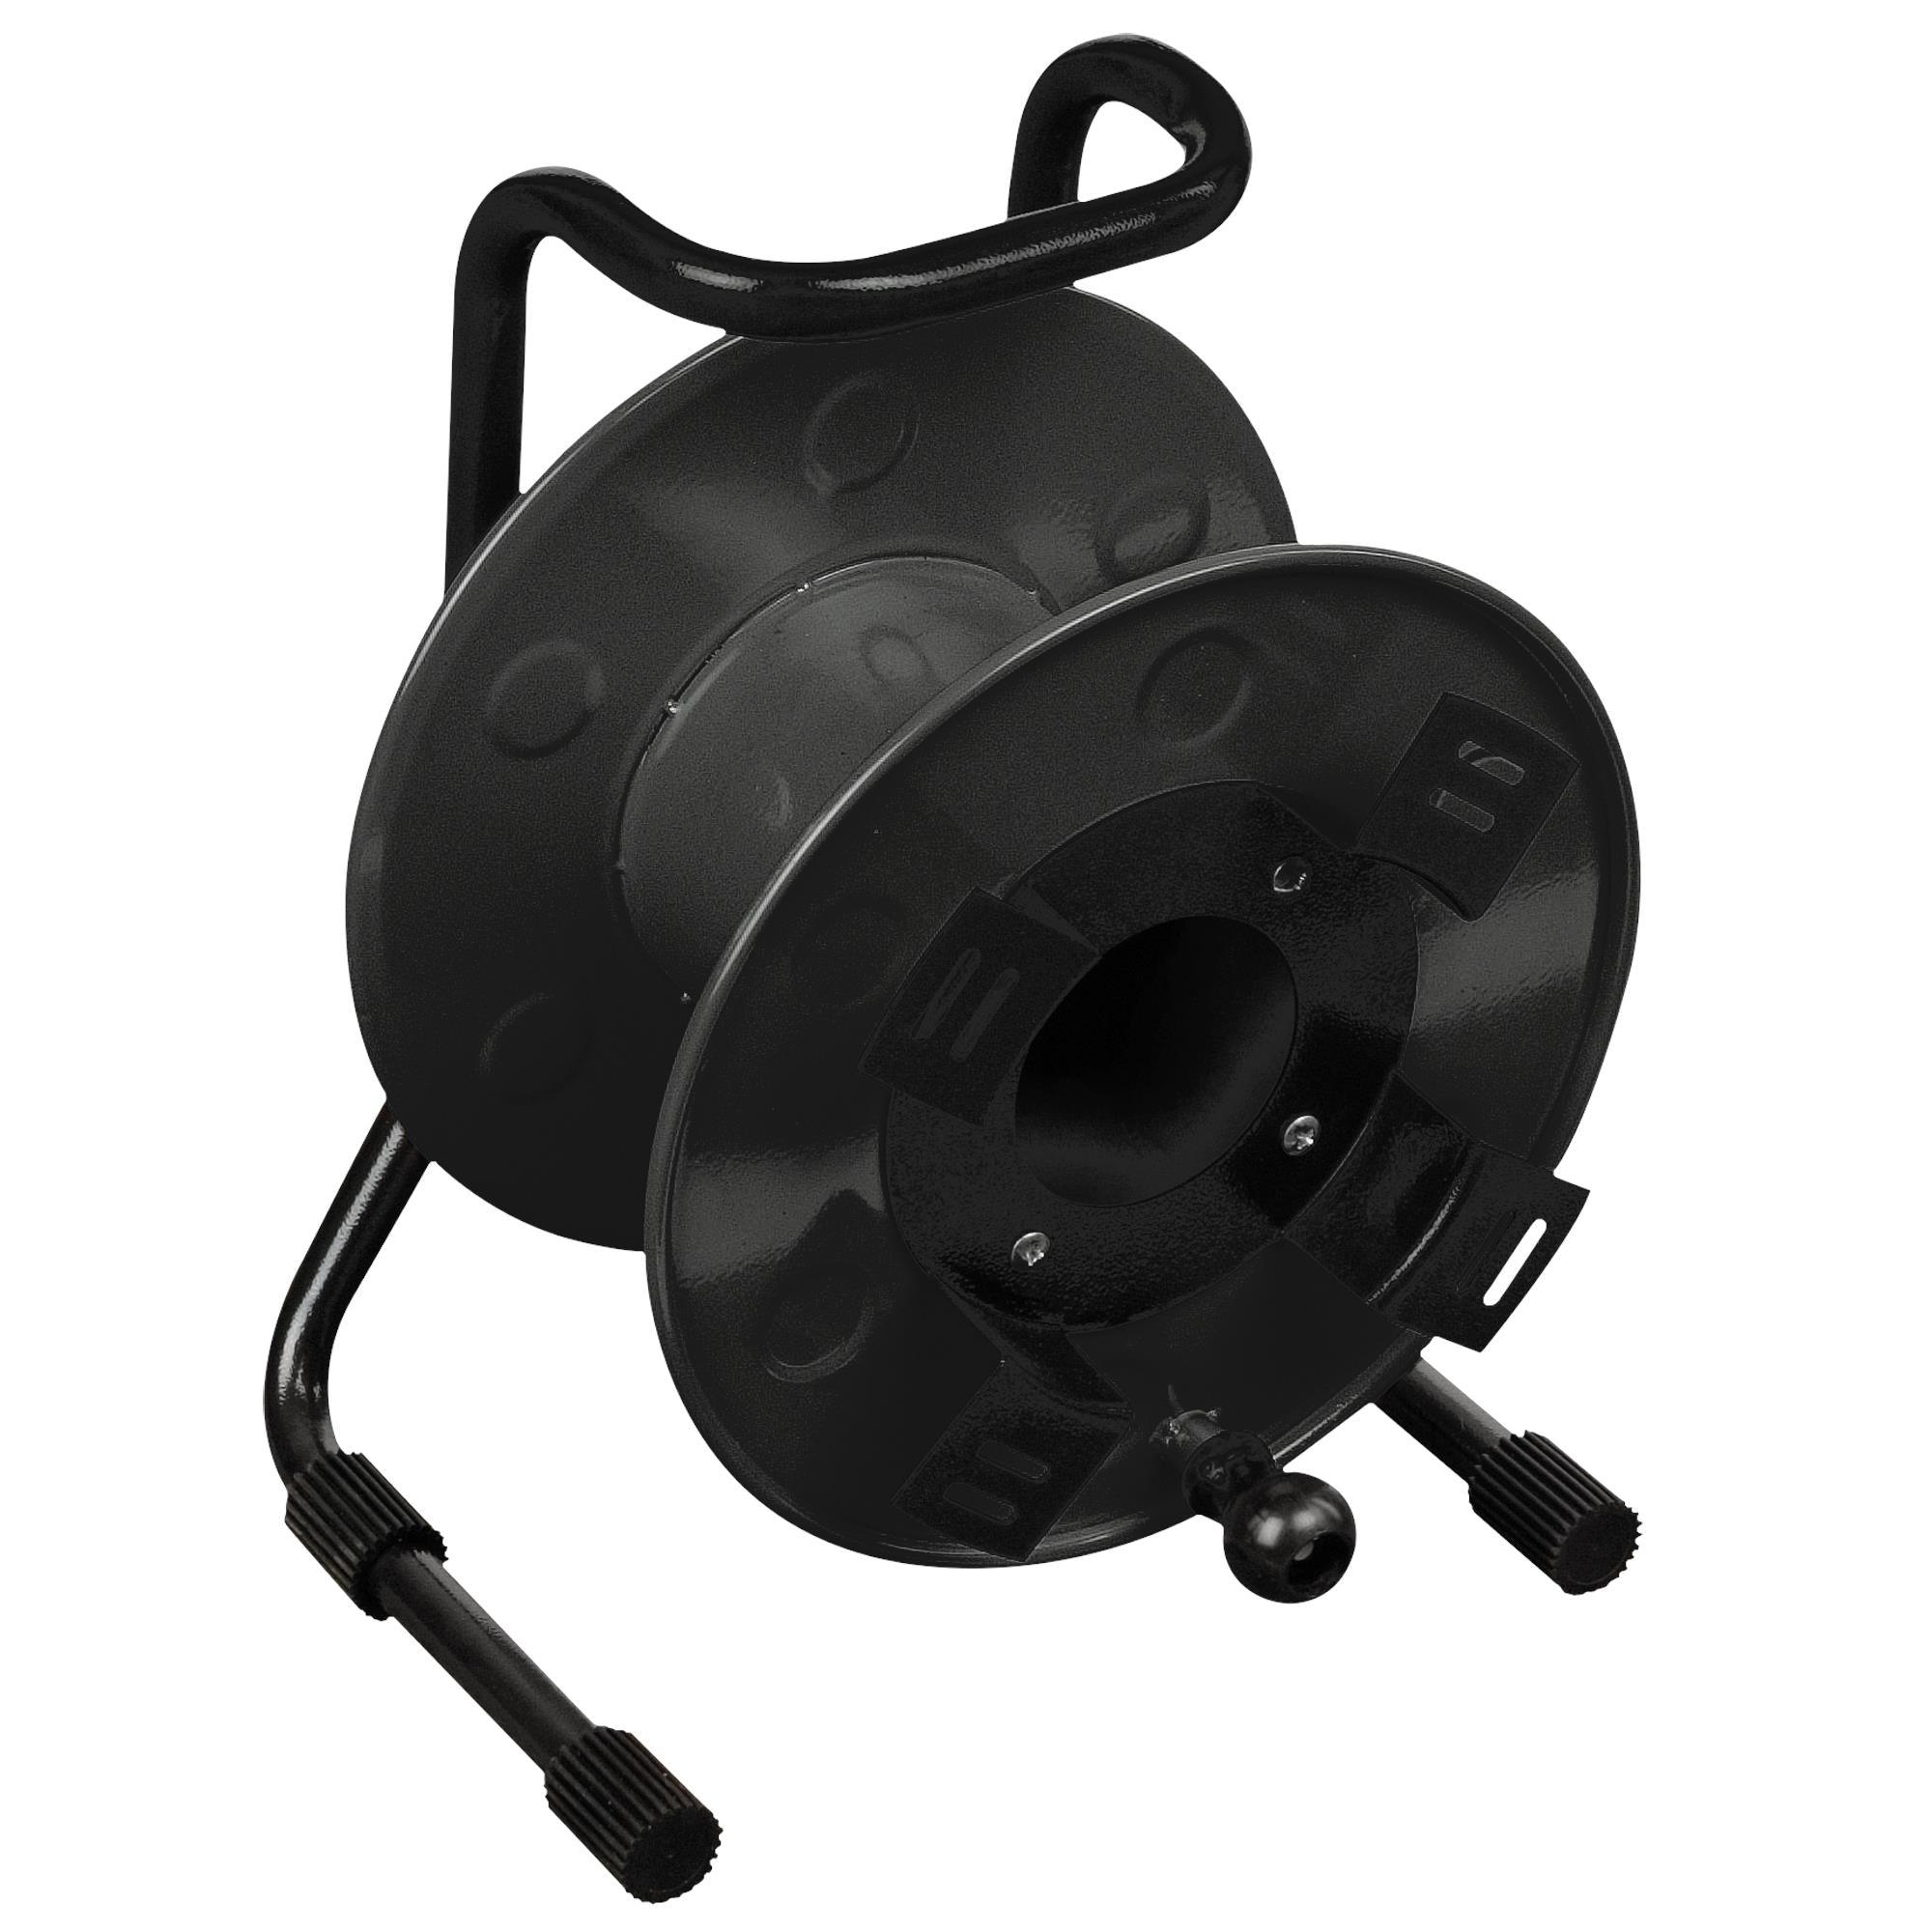 Showgear Cable Drum Large 270mm Black - DY Pro Audio